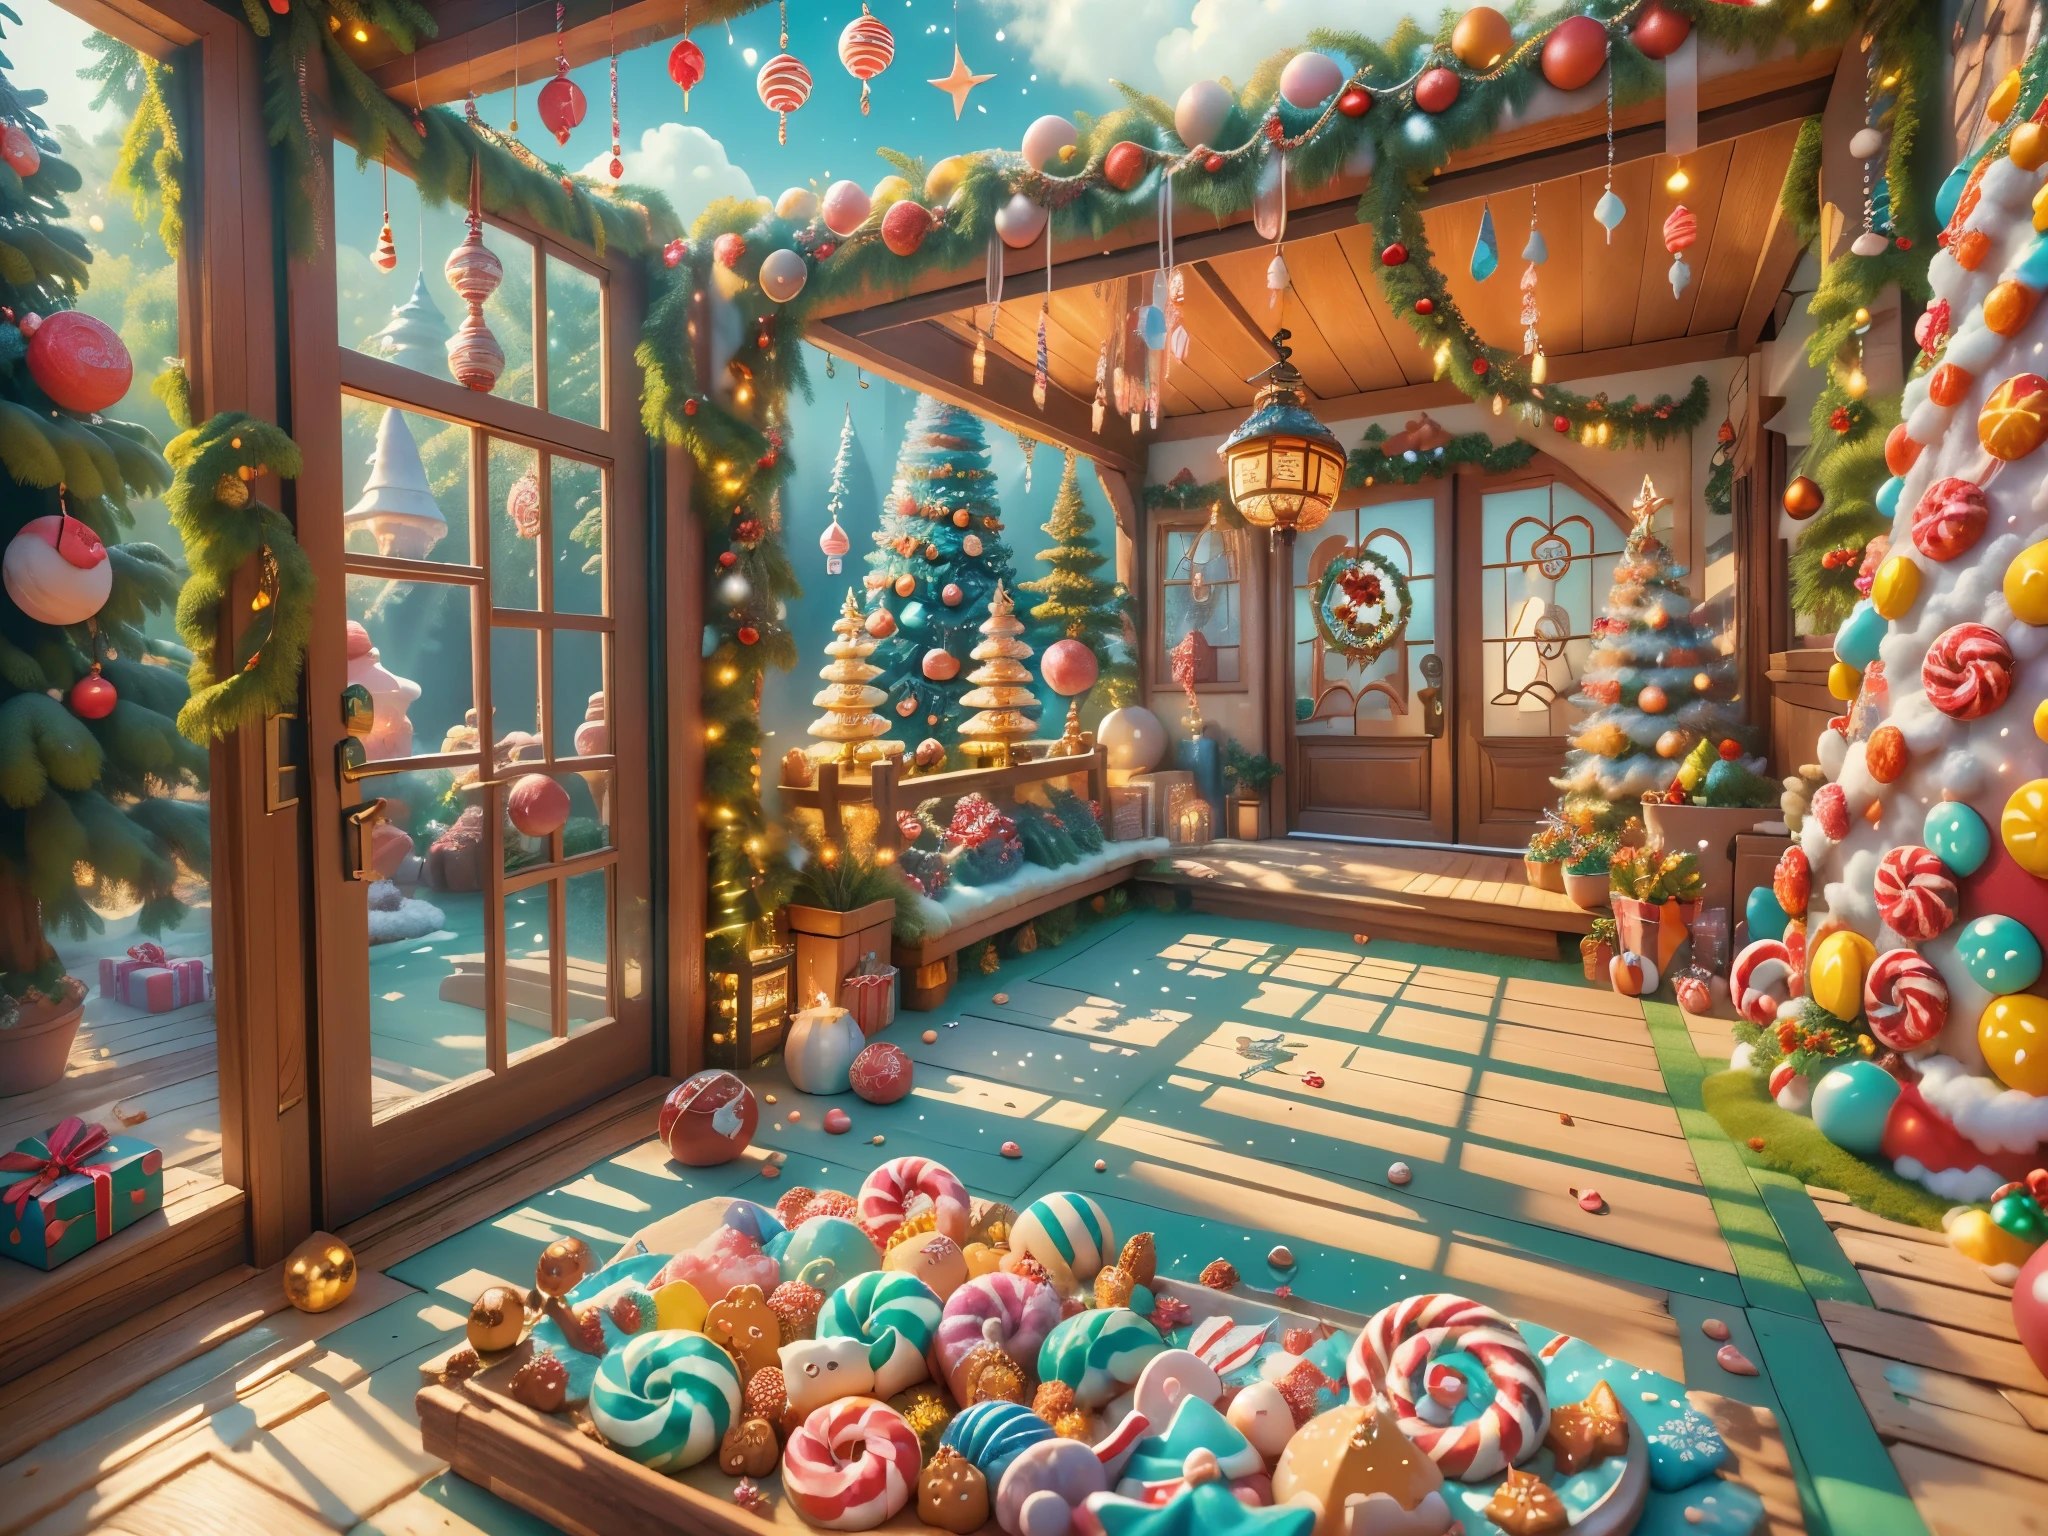 (傑作),（超詳細:1.3），(特寫: 1.8), 最好的品質，（棉花糖一样的白由希:1.2），（藍色童話裡的聖誕庭院:1.6），(藍色門上聖誕decorationlower ring: 1.8),（太陽隊），(((門前有美味的糖果，聖誕樹, 禮物, 聖誕襪, 可愛的薑餅人，巧克力屋飛濺))), 插畫風格, 裝飾, 奇幻聖誕小庭院, 可愛的設計風格, 由希，rays of 太陽隊hine，色彩鮮豔、 ((異想天開和迷人的幻想)), 超現實肖像, (奇幻主題聖誕小屋), (異想天開的聖誕配件), (豐富多彩的, 充滿糖果的風景), (妖嬈, 神奇的聖誕樹), (充滿活力的一個, 糖果色的庭院), (糖果路), (藍色糖果門) 在距離上, (像一面鏡子, 不对称傑作钟表配件), (富有的, 夢幻般的色彩), (温暖的rays of 太陽隊hine), (四維夢境), (妖嬈 atmosphere), (俏皮的作文), (生动的rays of 太陽隊hine效果), 1.4 倍真實感，超高畫質，展現在這美麗的場景中，(非常細緻，設計合理，線條清晰，高清晰度，傑作，官方藝術，電影燈光效果，8K)